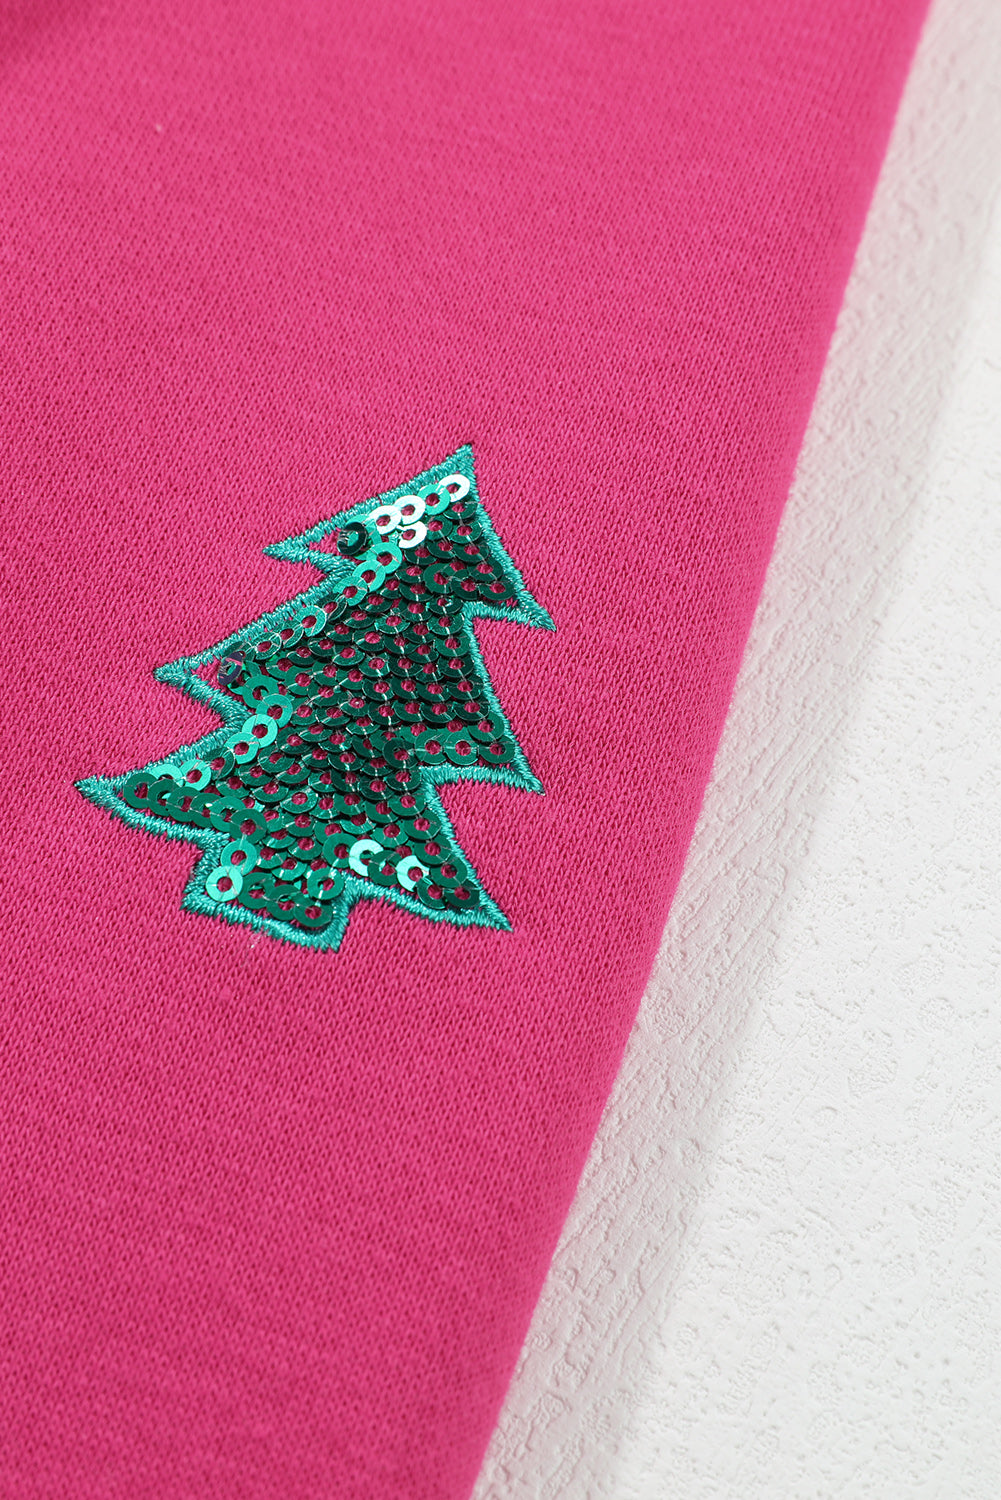 Erdbeerrosa MERRY Christmas Tree Pailletten-Patchwork-Sweatshirt